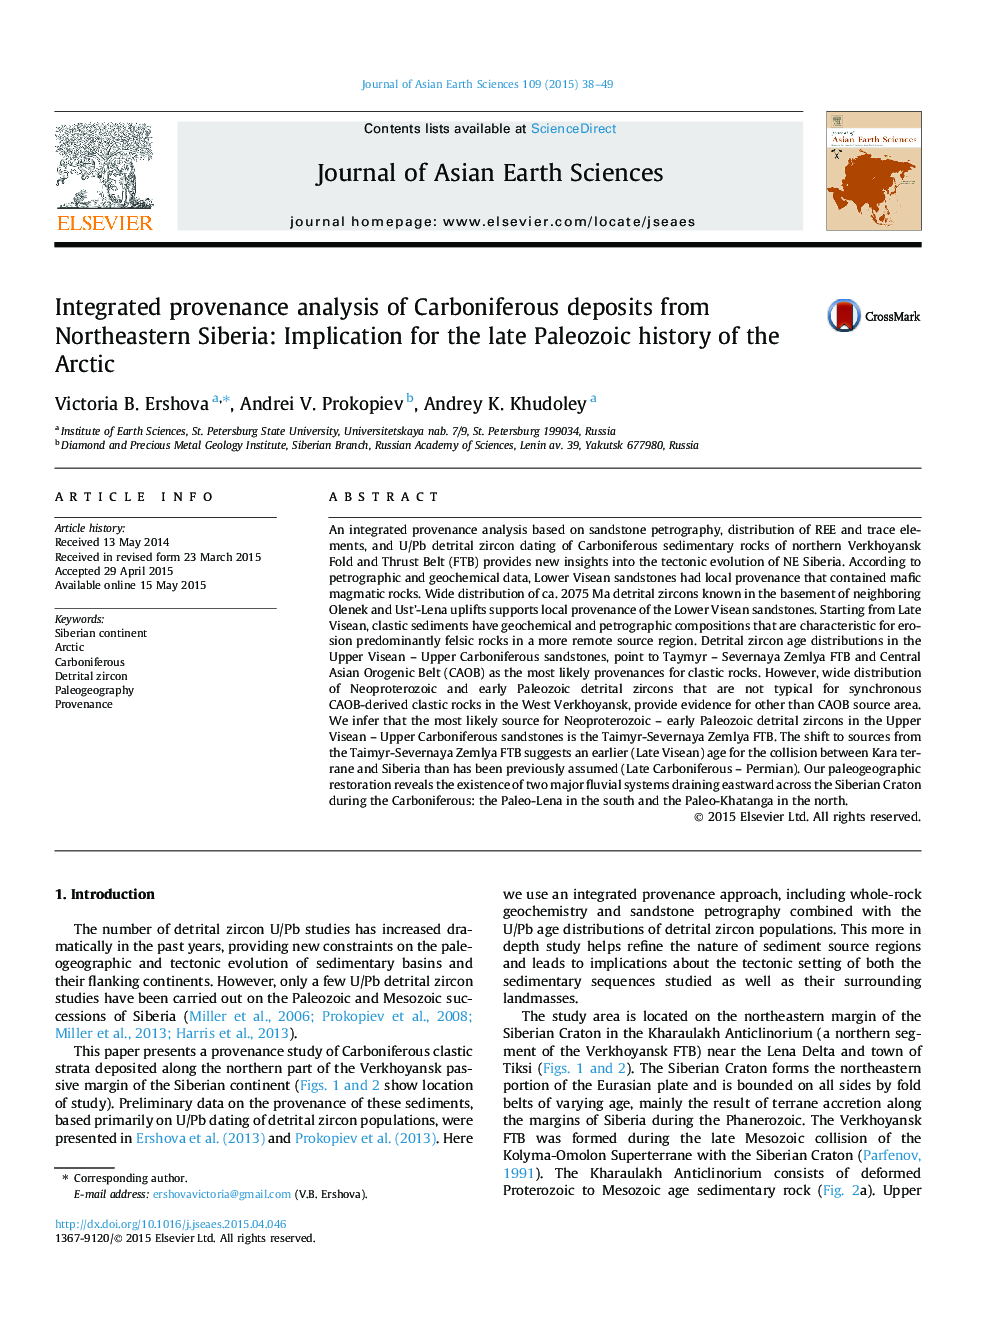 تجزیه و تحلیل پروتئینی یکپارچه از ذخایر کربنیک از شمال شرقی سیبری: ناشی از تاریخ اواخر پالئوزویک قطب شمال 